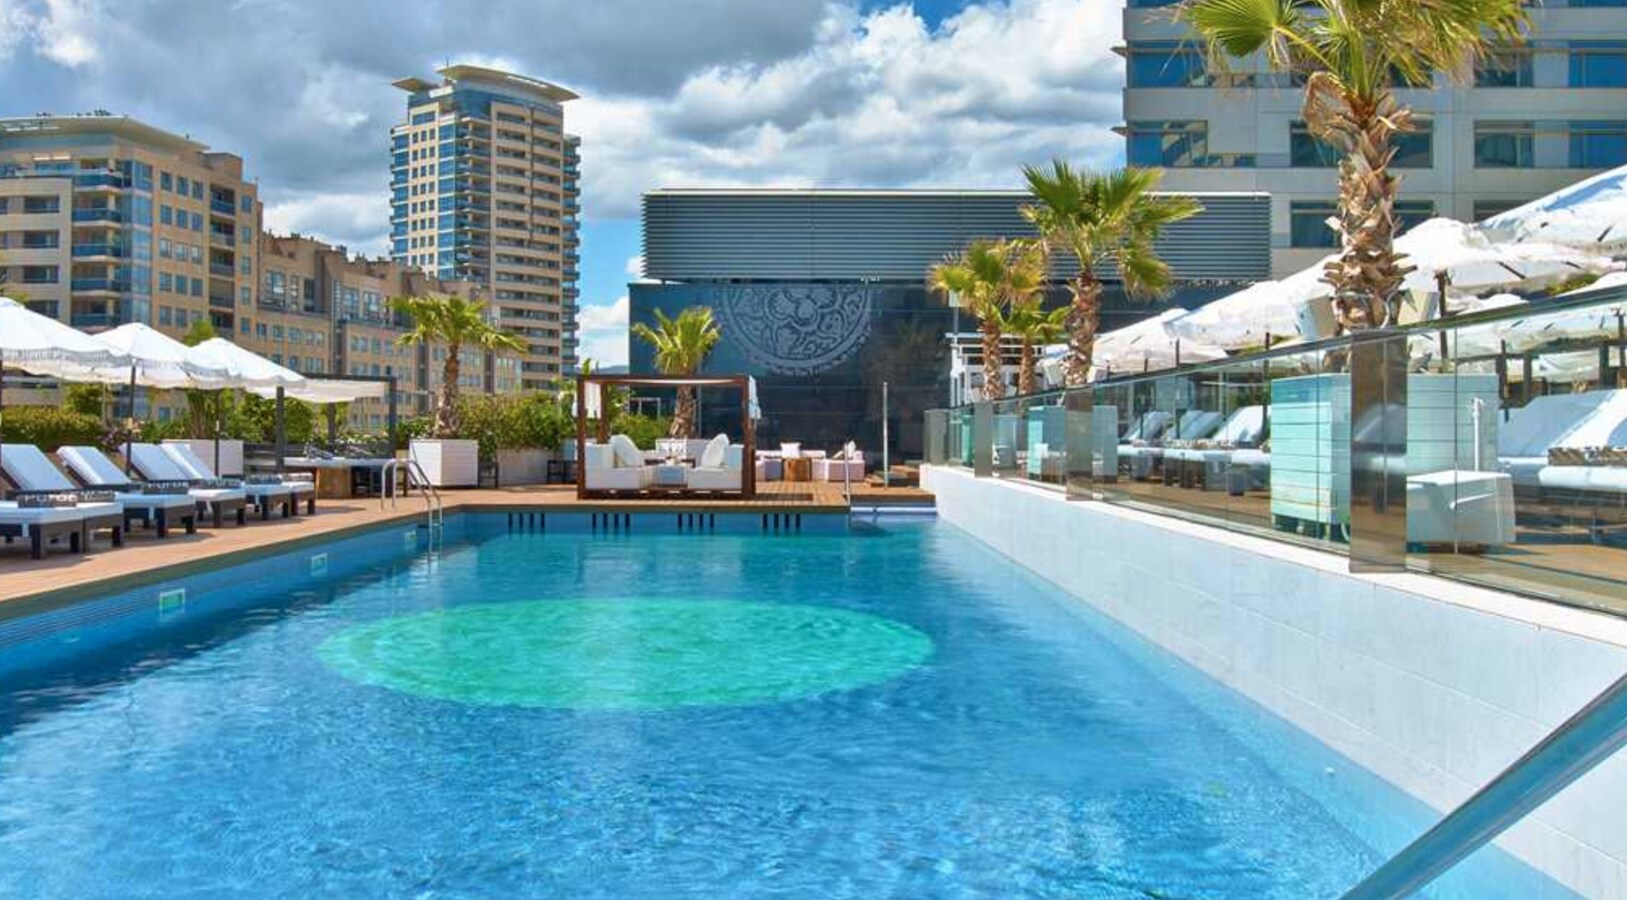 Mejor Hotel de Negocios de Europa 2021: Hilton Diagonal Mar Barcelona